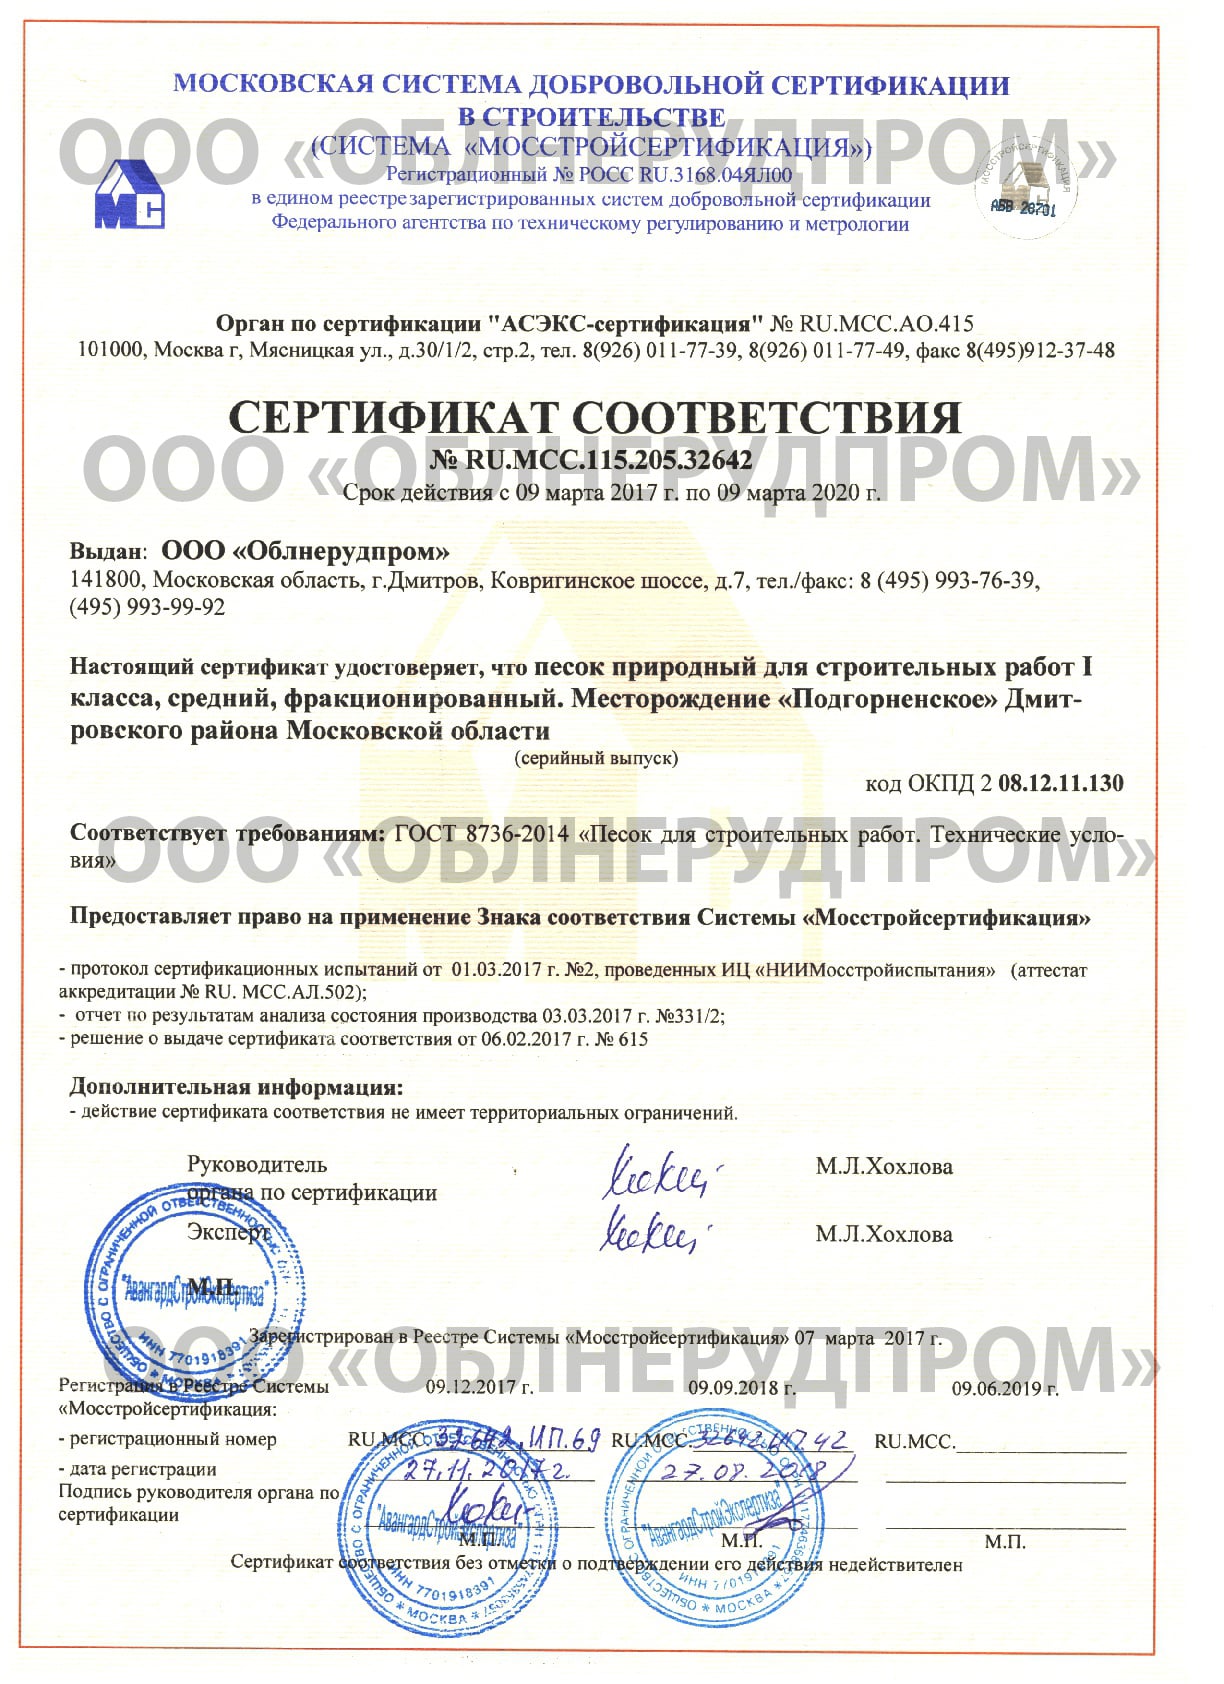 Сертификат на песок природный для строительных работ 1 класса, средний, фракционированный (песок сеяный)